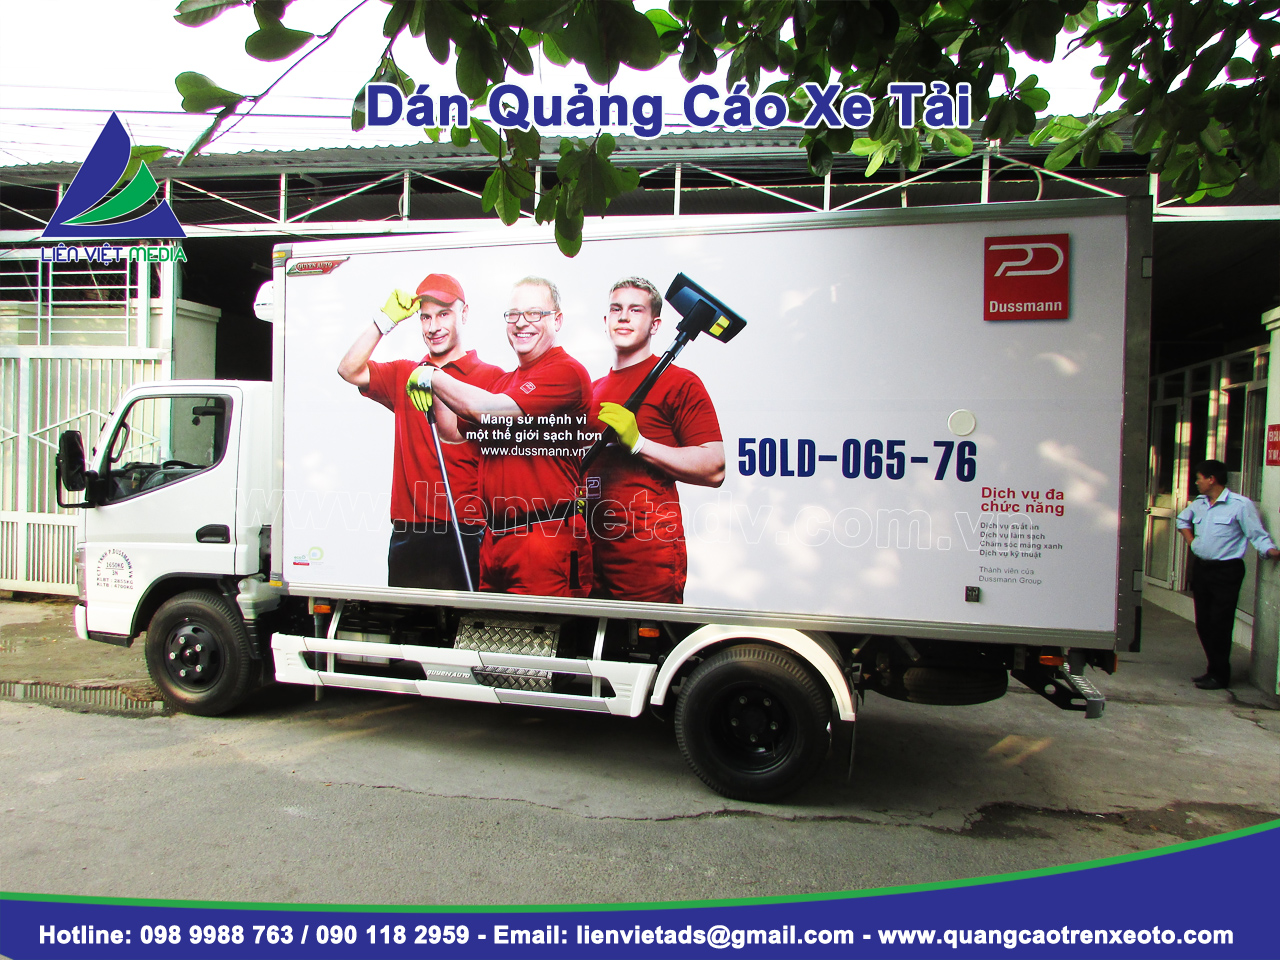 Quảng cáo trên xe Tải  Cty Dussman Việt Nam